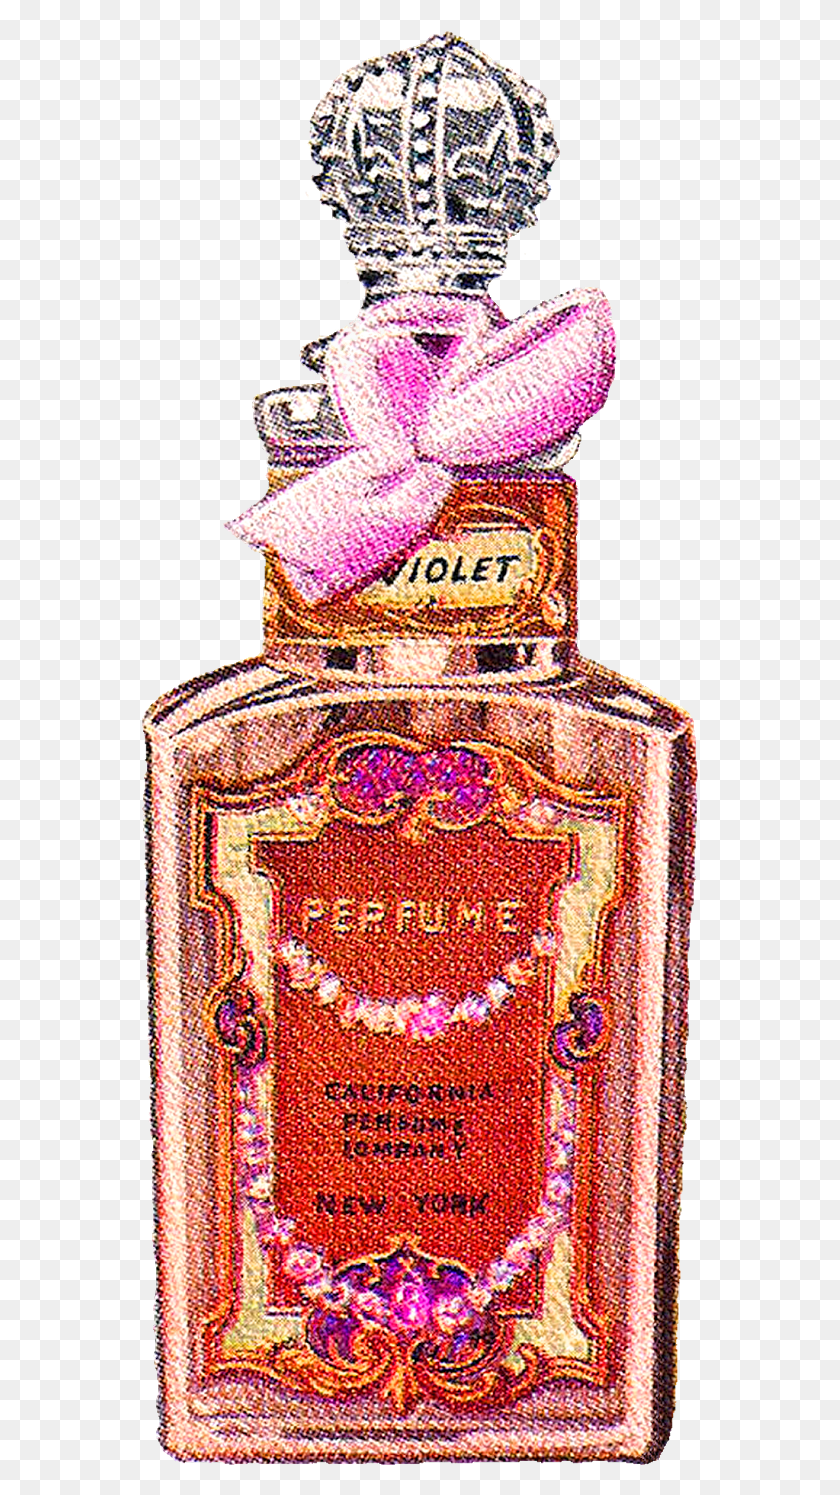 557x1435 Esta Imagen De Época De Una Botella De Perfume Violeta Botella, Tarro, Cosméticos, Botella De Tinta Hd Png Descargar